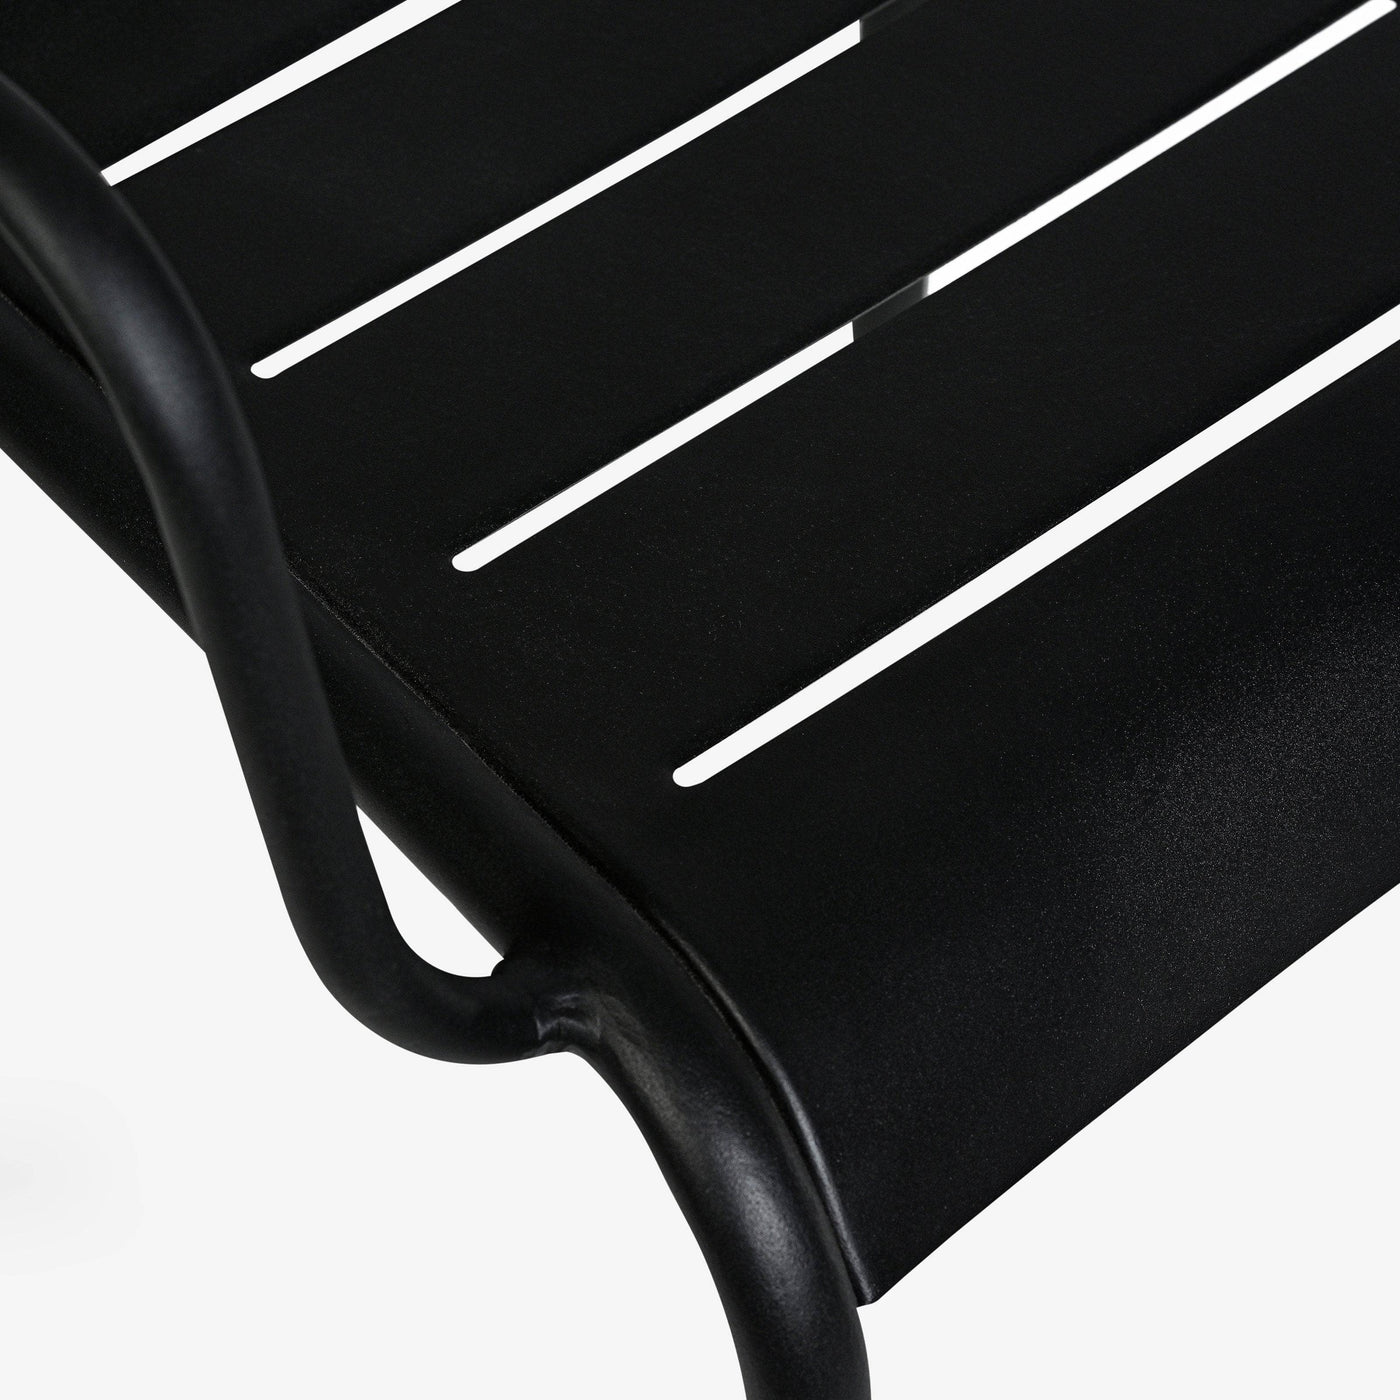 Rosta Stackable Aluminium Garden Armchair, Black Garden Chairs sazy.com